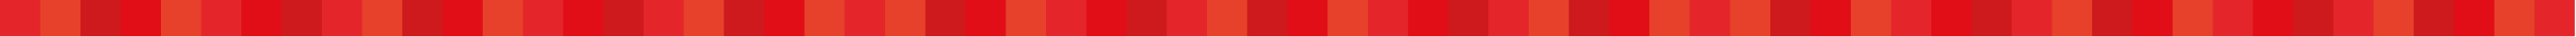 Imagen decorativa cuadrados rojos